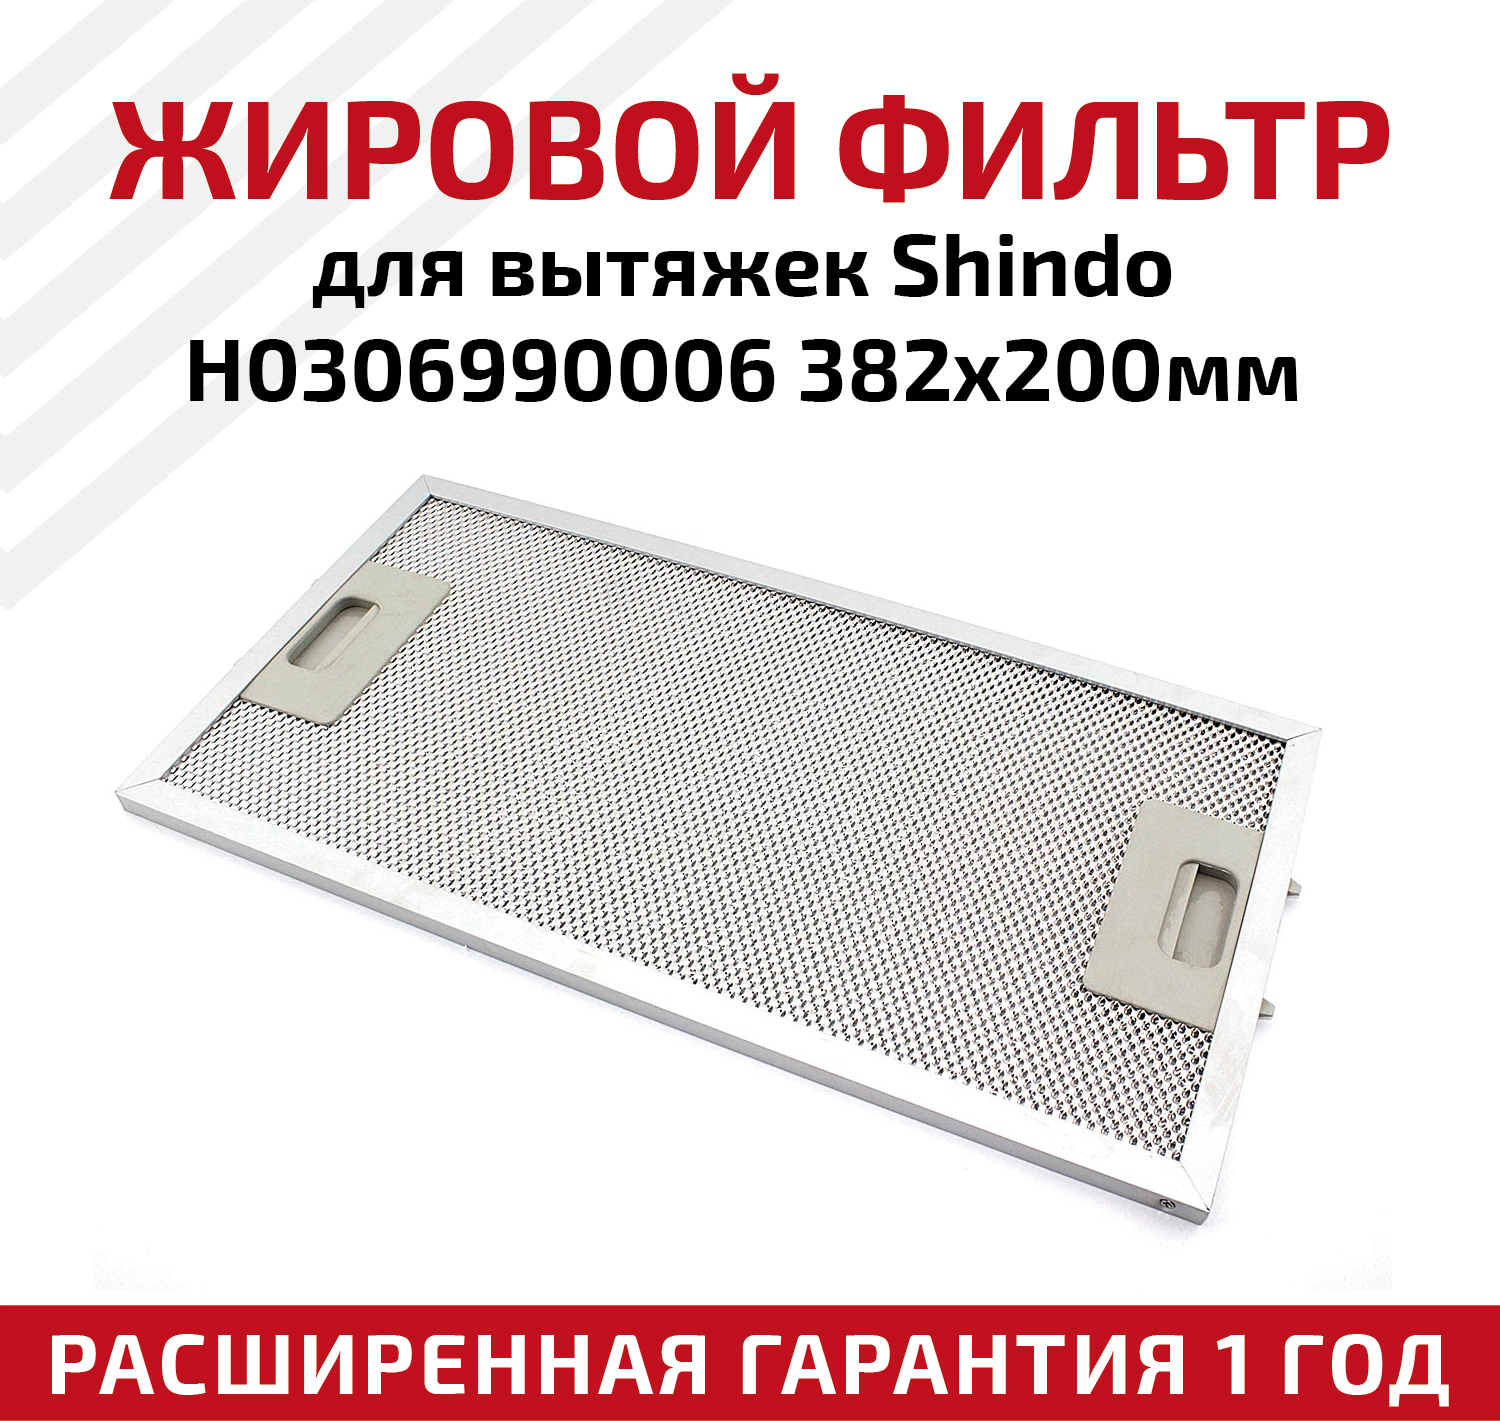 Жировой фильтр (кассета) алюминиевый (металлический) рамочный для кухонных вытяжек Shindo H0306990006, многоразовый, 382х200мм